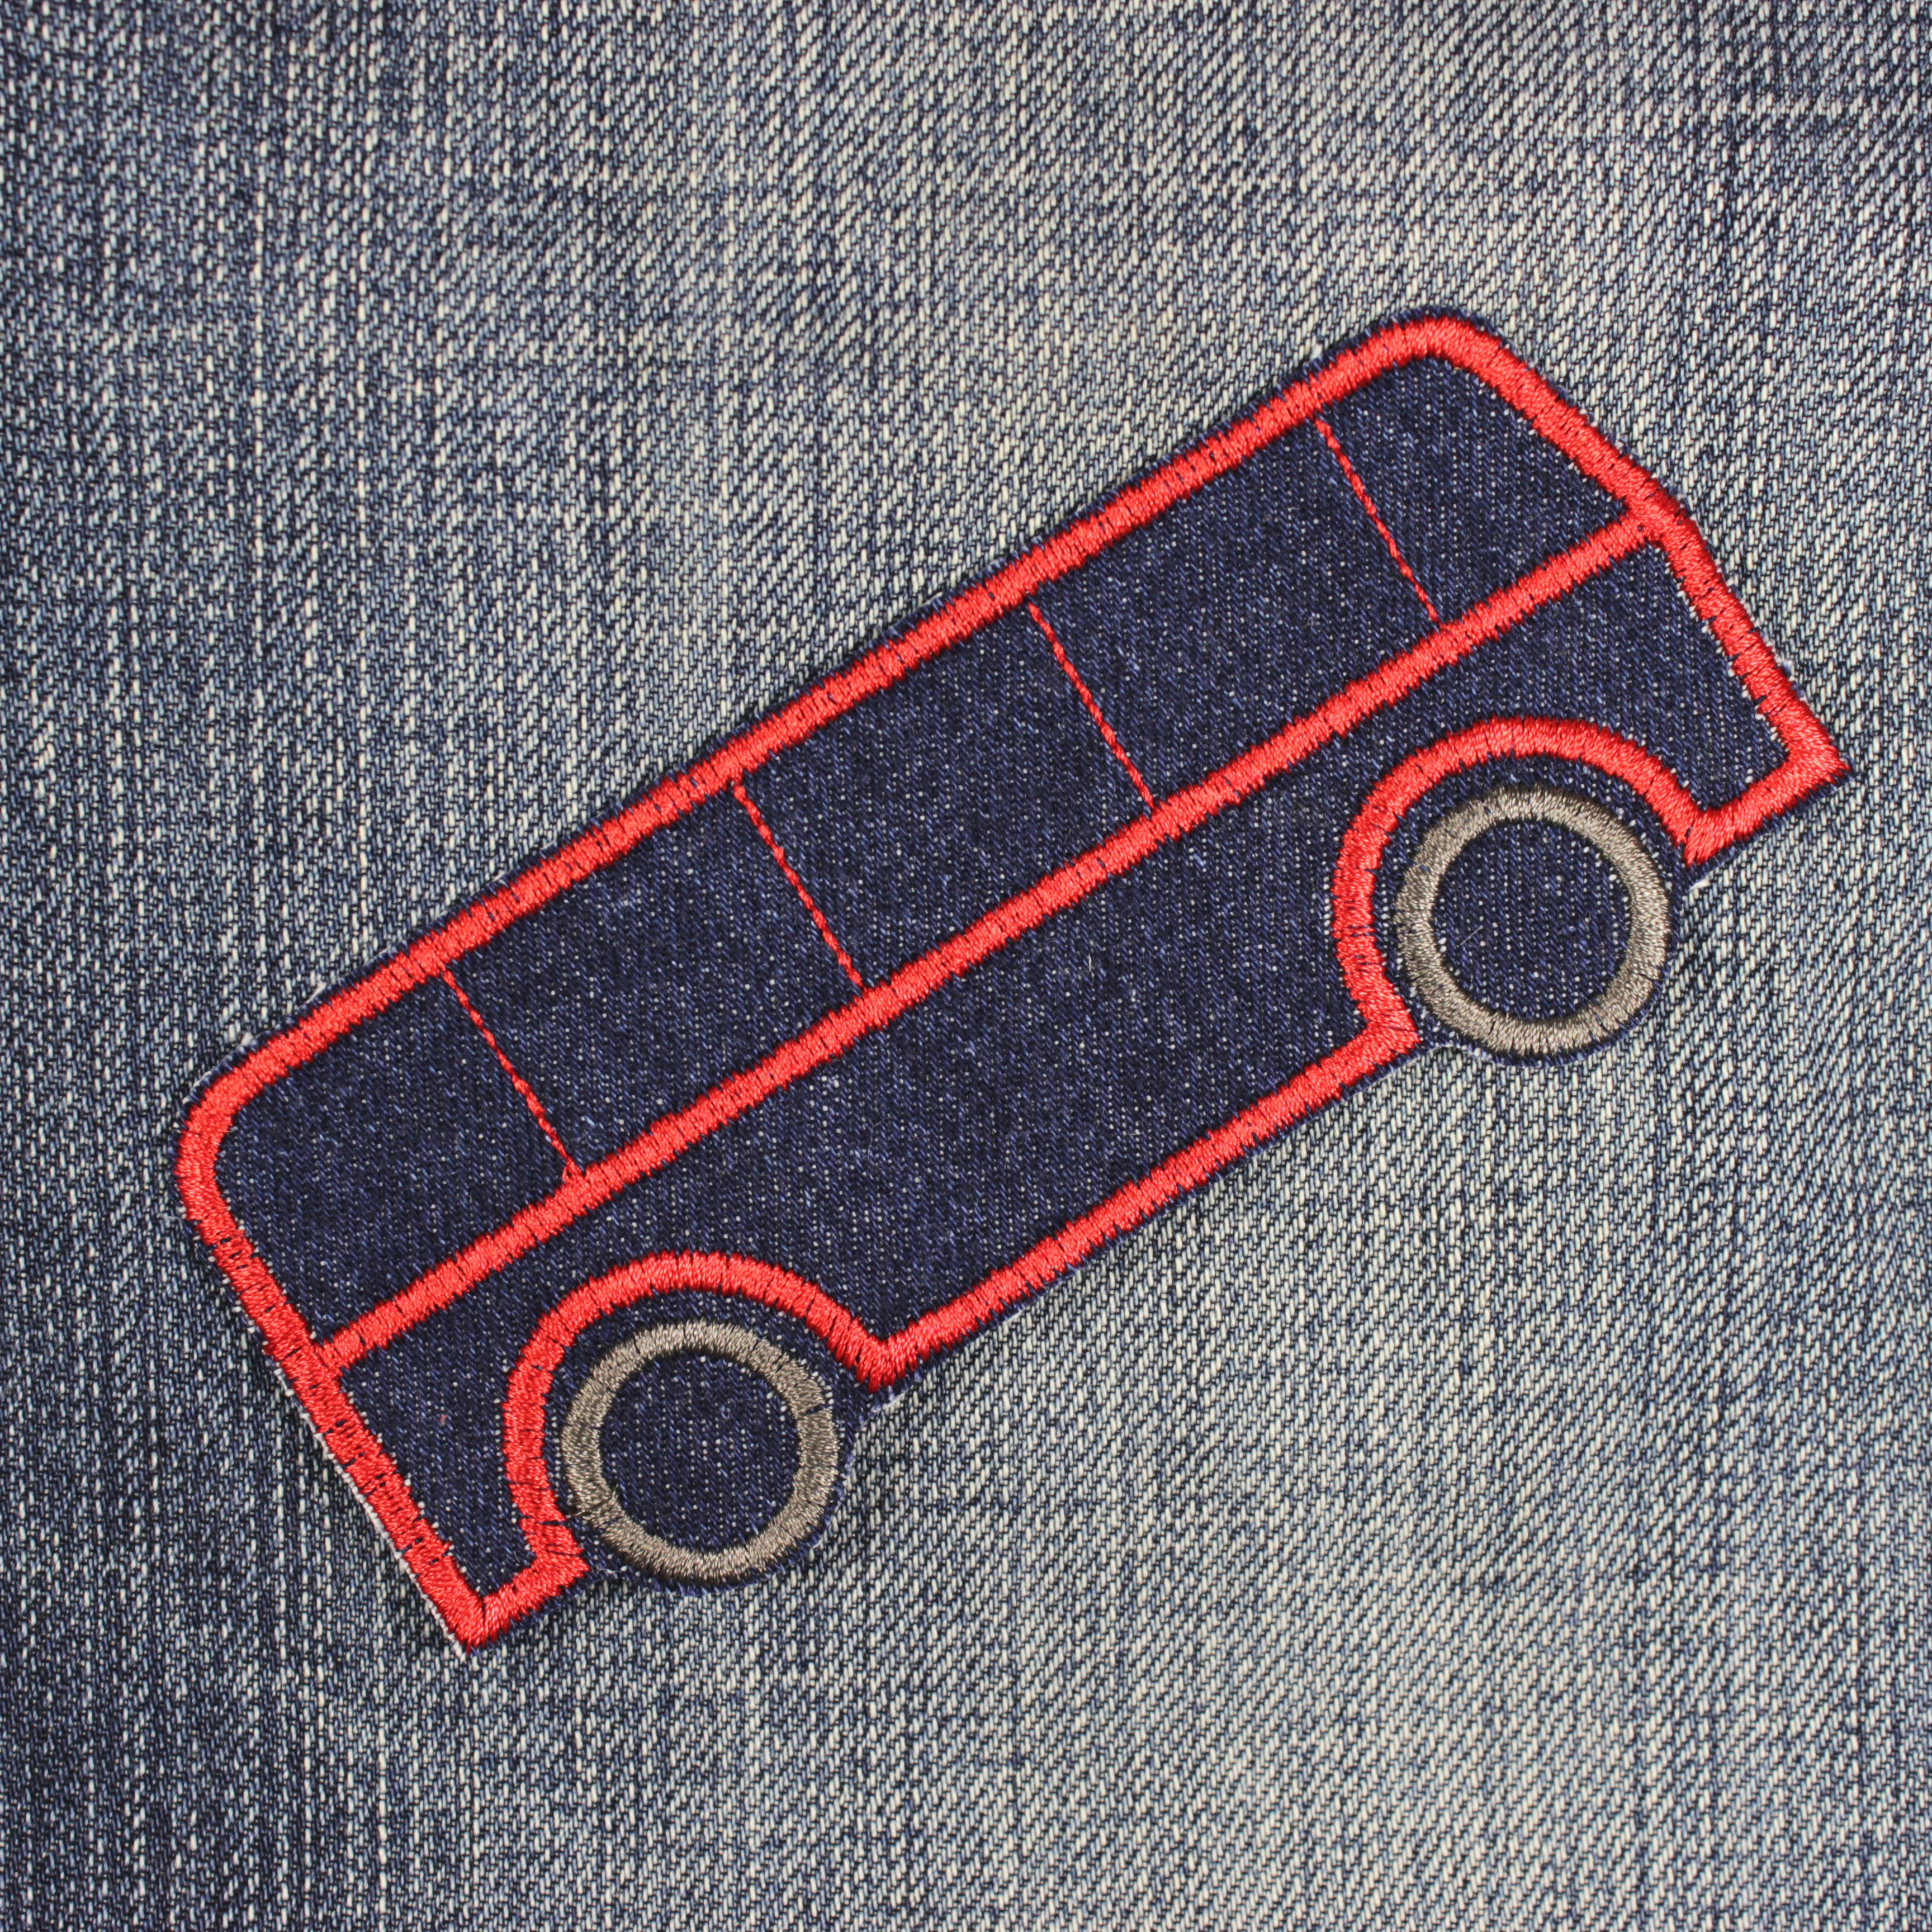 Bügelbild Bus Applikation zum aufbügeln als Applikation auf Jeansjacke aufbügler aus Jeans Bügelbild